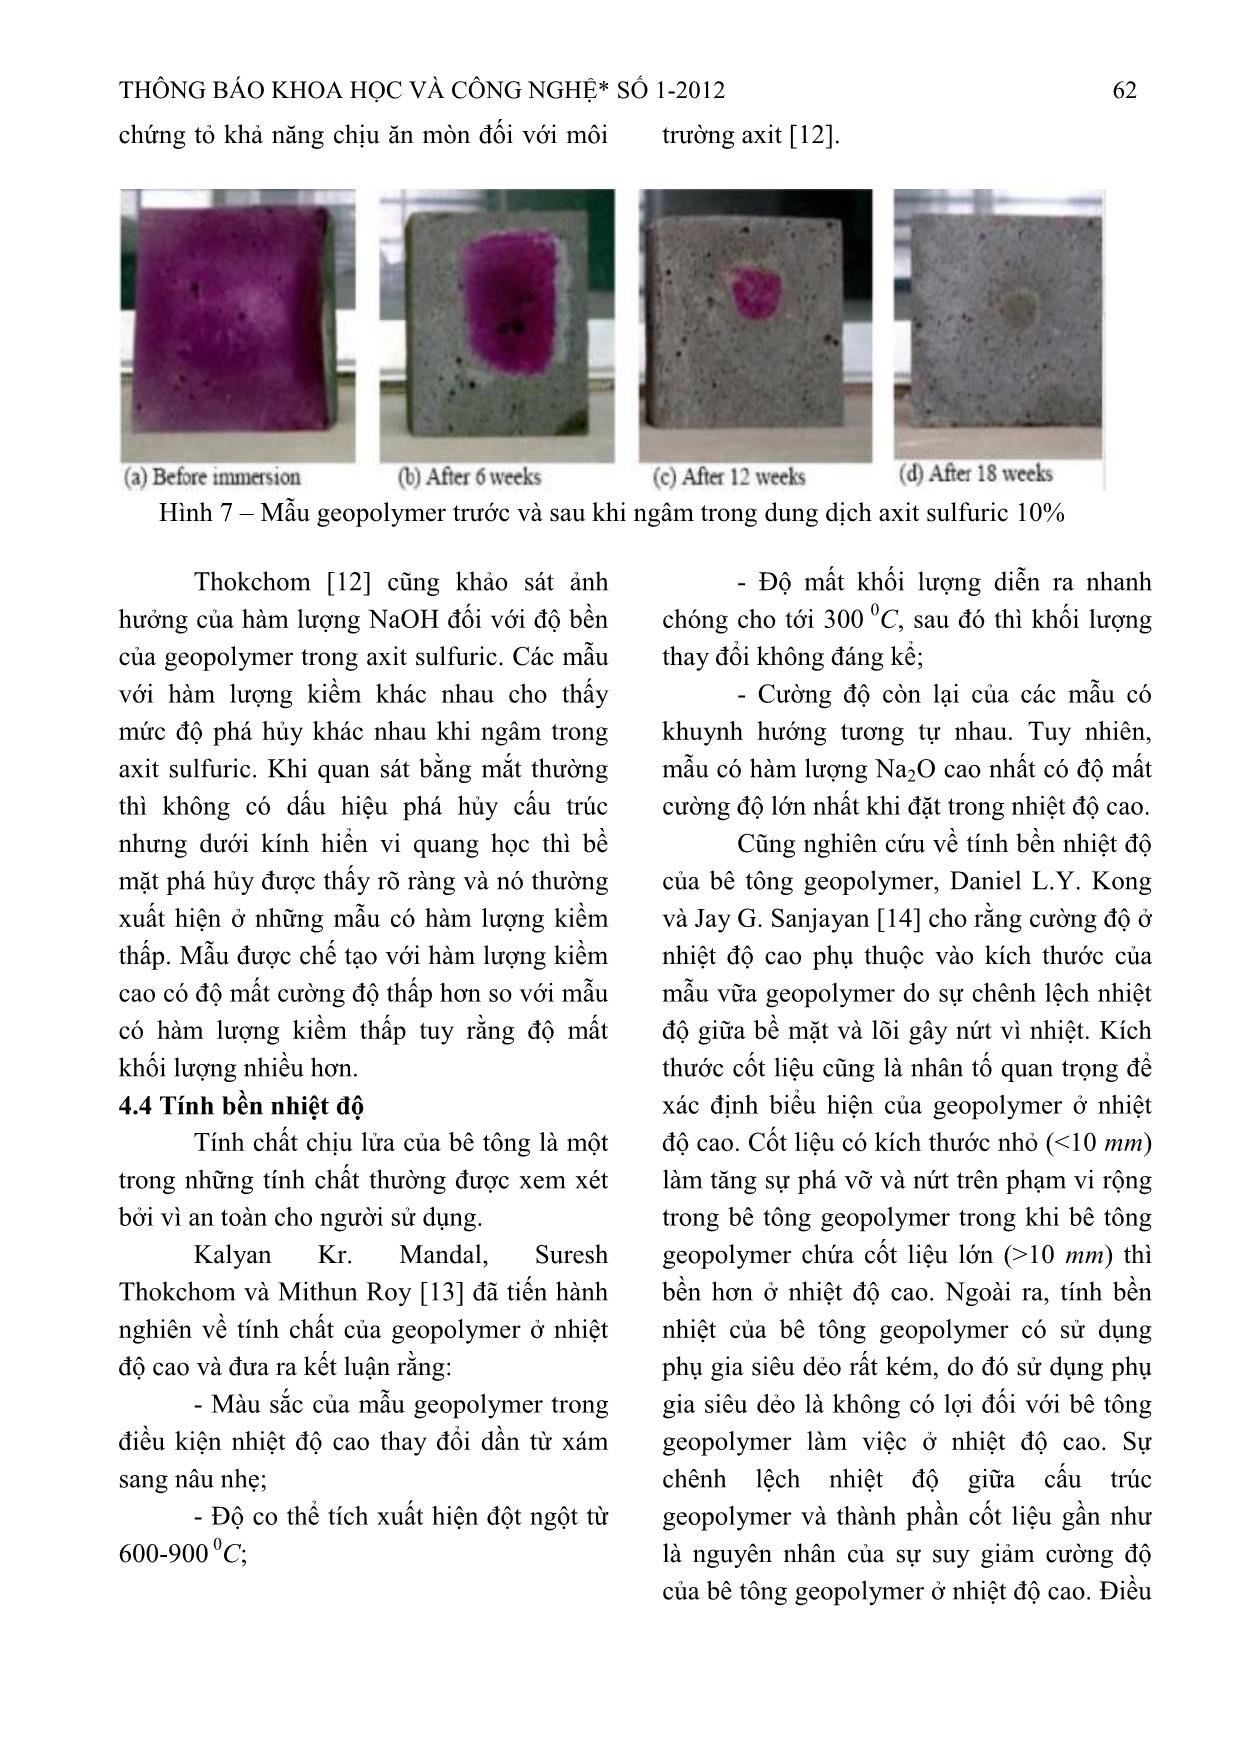 Nghiên cứu kỹ thuật bê tông Geopolymer từ tro bay không sử dụng xi măng Portland trang 5